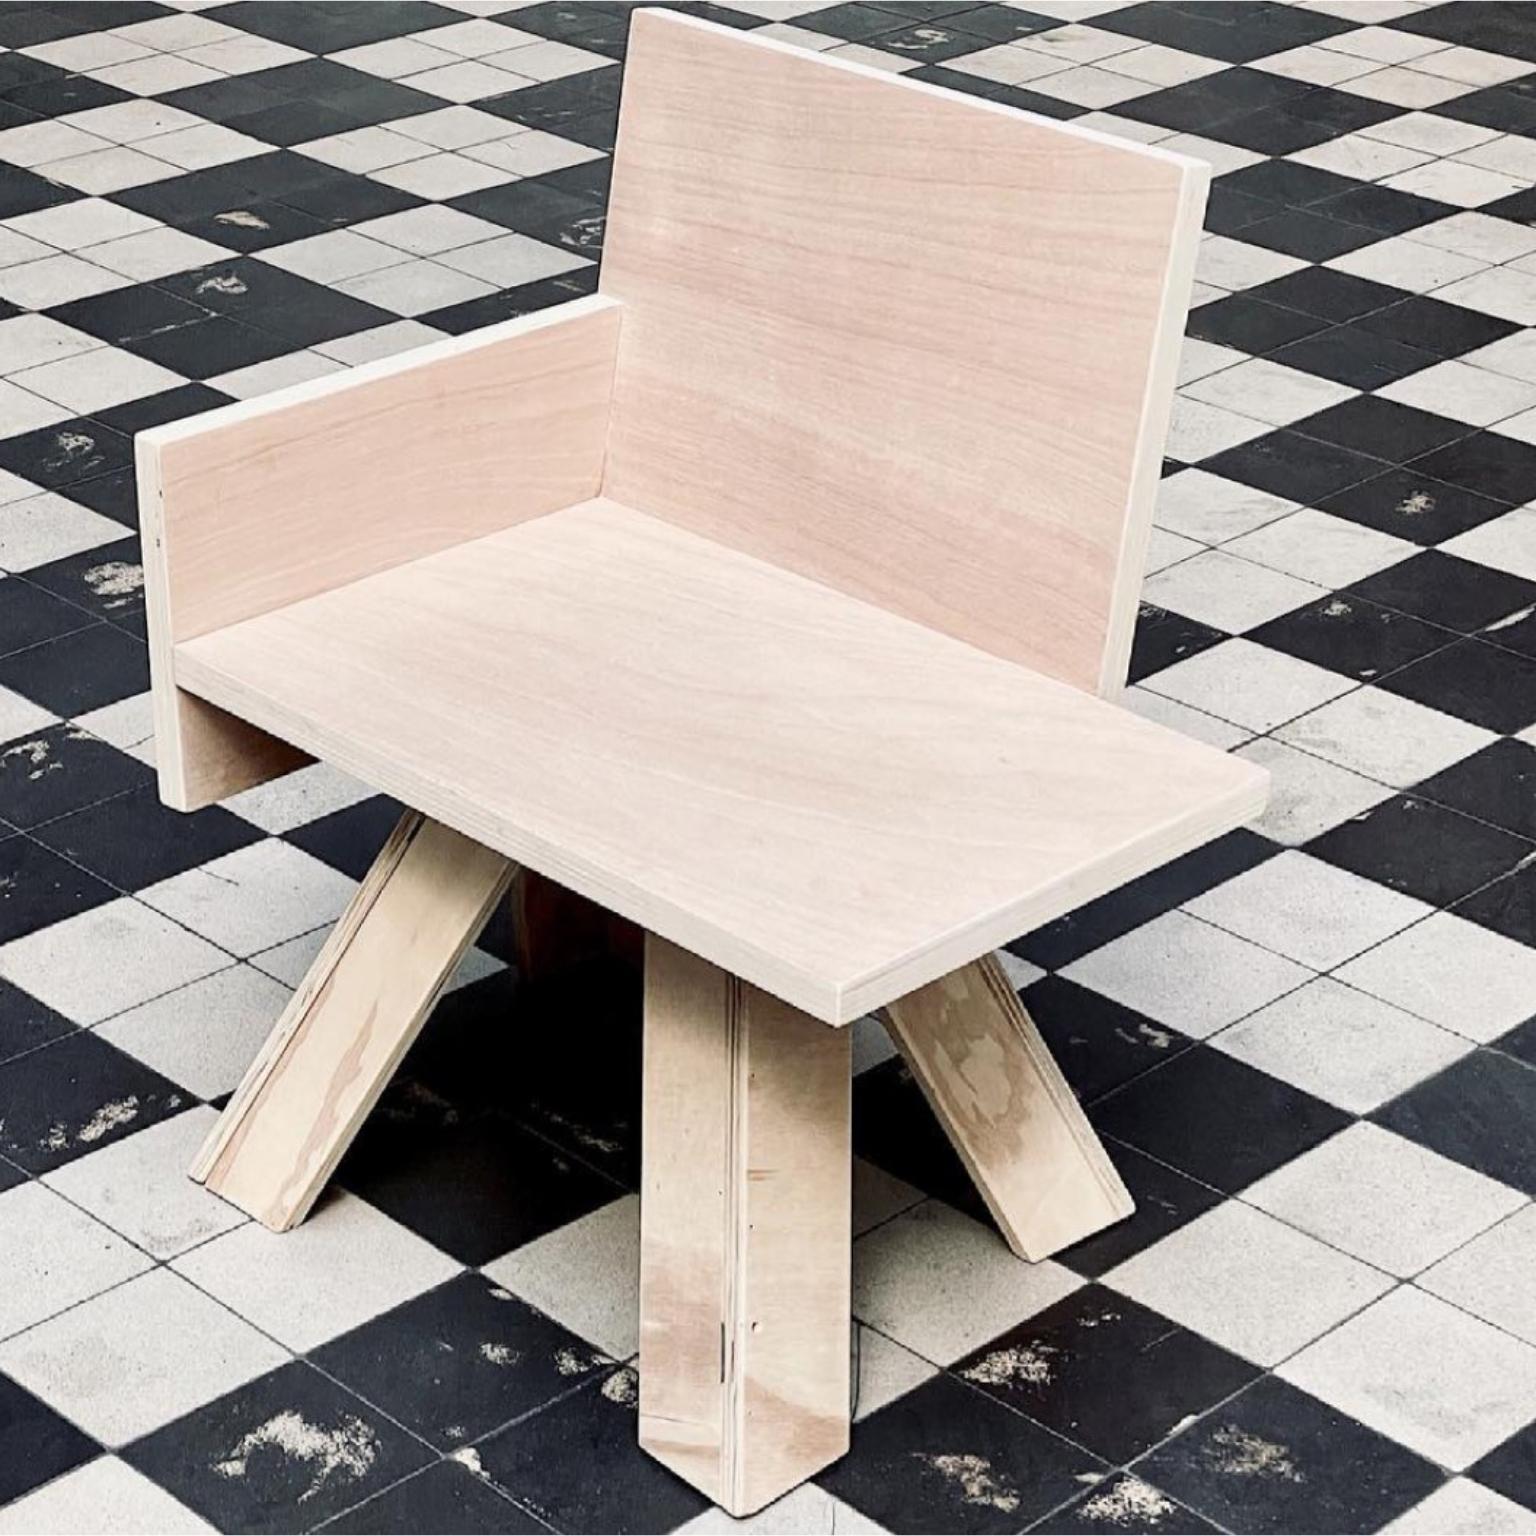 Einzigartiger Stuhl für den Beistelltisch von Goons 
Abmessungen:  B 69 x T 49 x H 80 cm
MATERIALIEN: Holz
Die Abmessungen können um +/- 10 cm angepasst werden.

Goons hat seinen Sitz in Paris, Frankreich. Alle ihre Entwürfe sind aus Holz gefertigt.